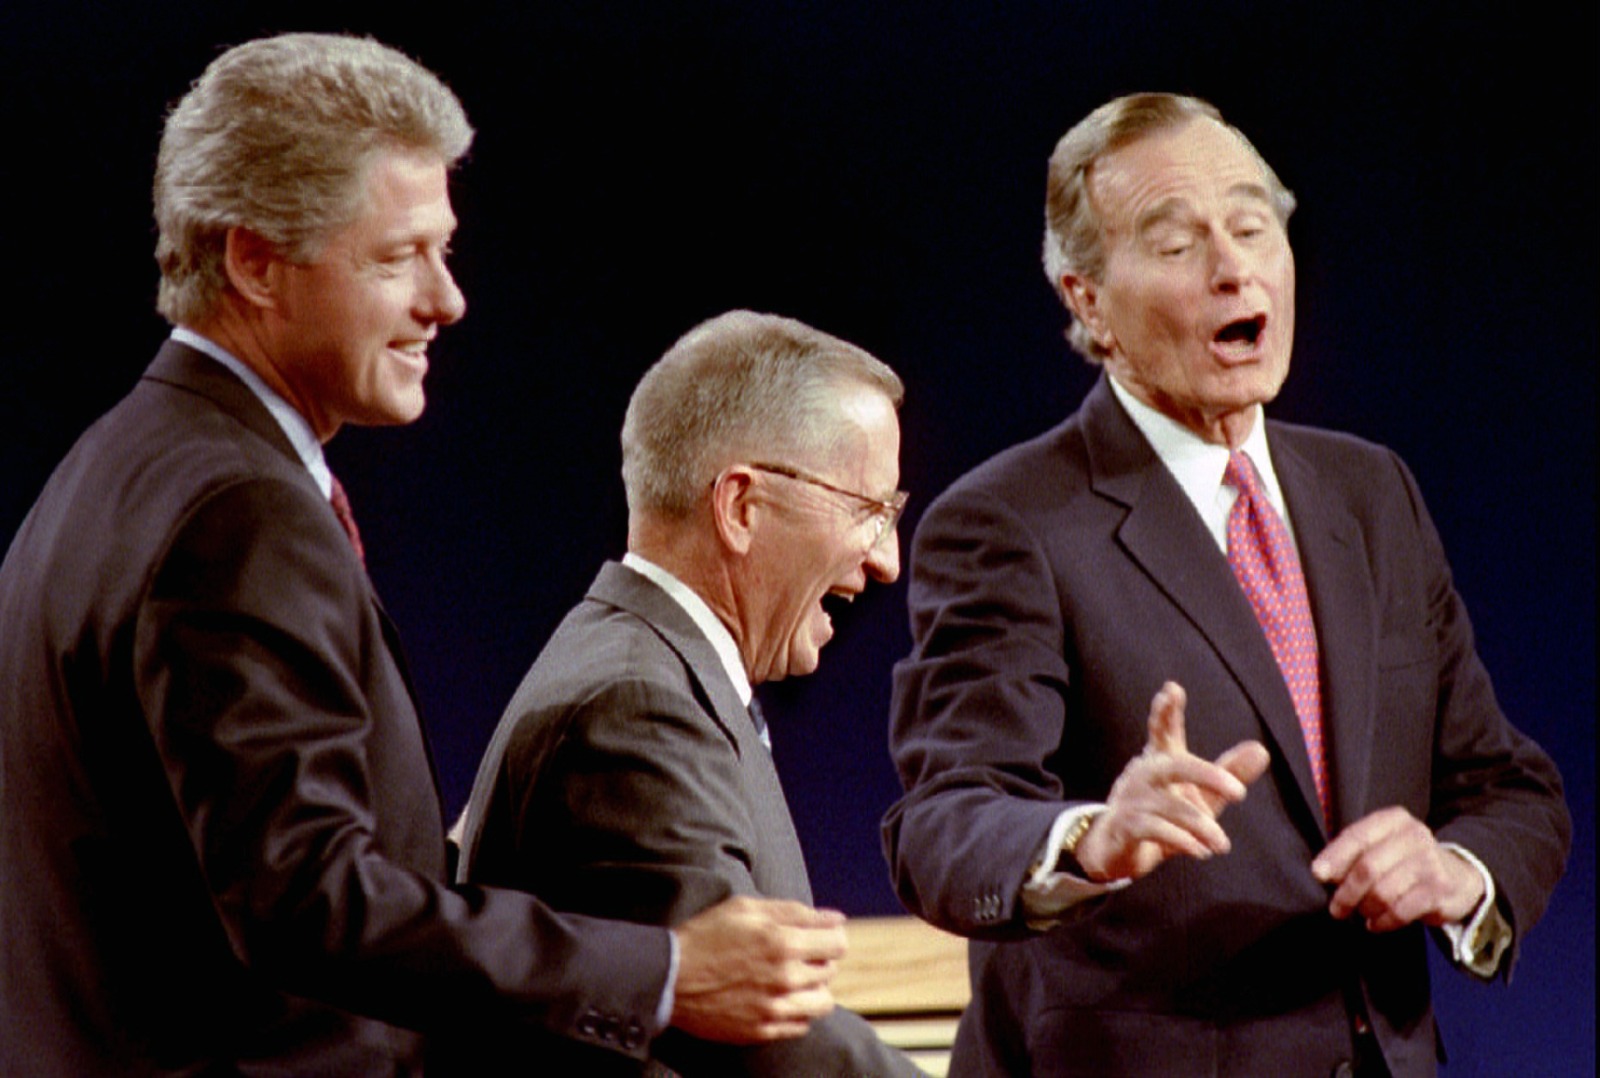 بيل كلينتون (يسار) روس بيرو (وسط) وجورج بوش في اختتام المناظرة الرئاسية. 19 أكتوبر 1992